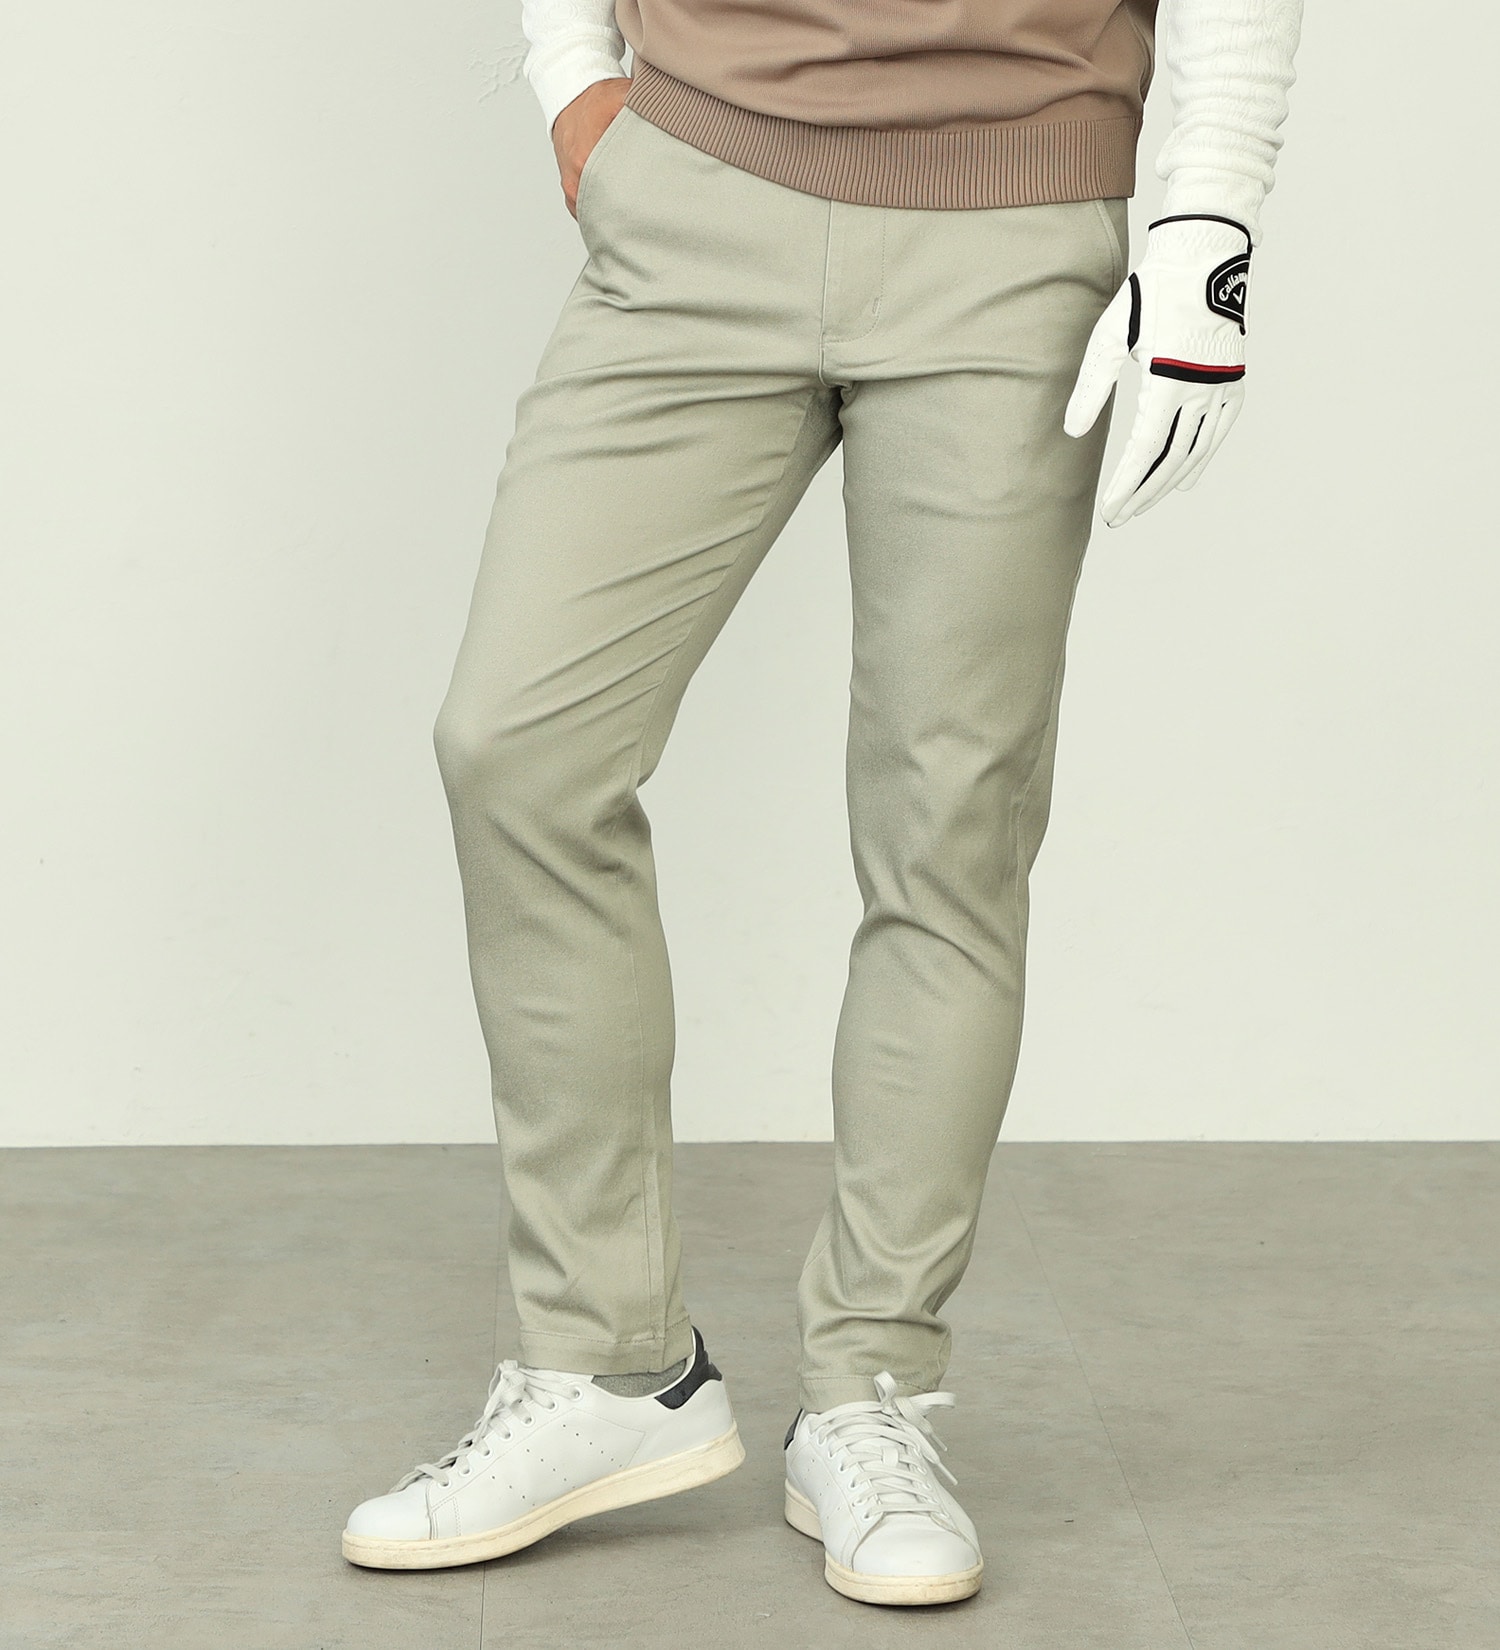 エドウィンゴルフ　ゴルフスカート　オリーブ色　ポケット